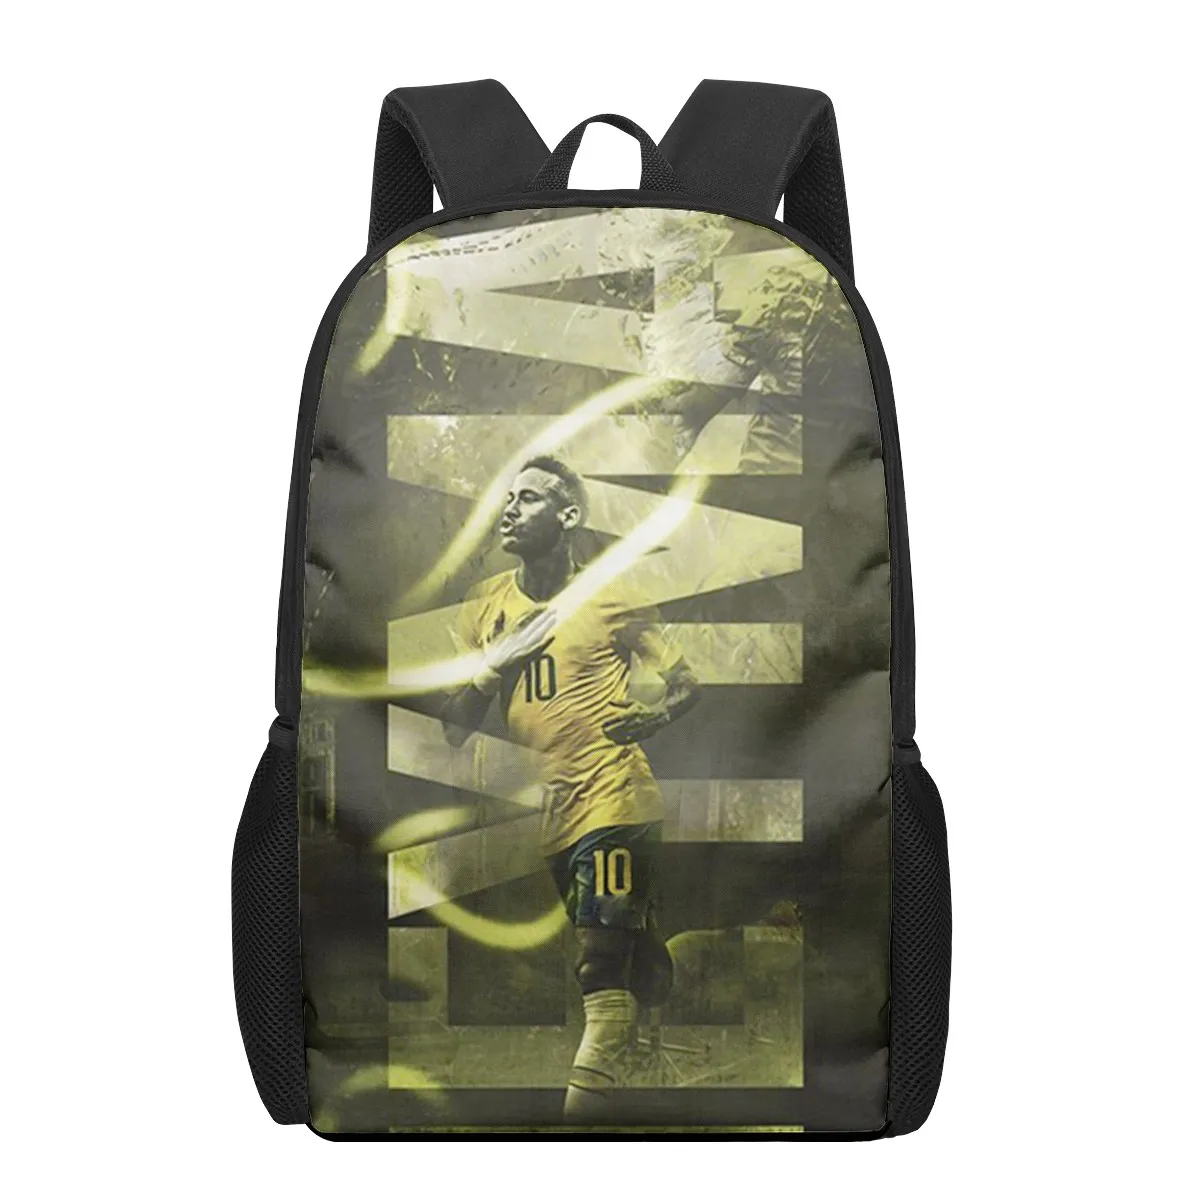 Tanio HOMDOW Football-star-Neymar torby szkolne dla